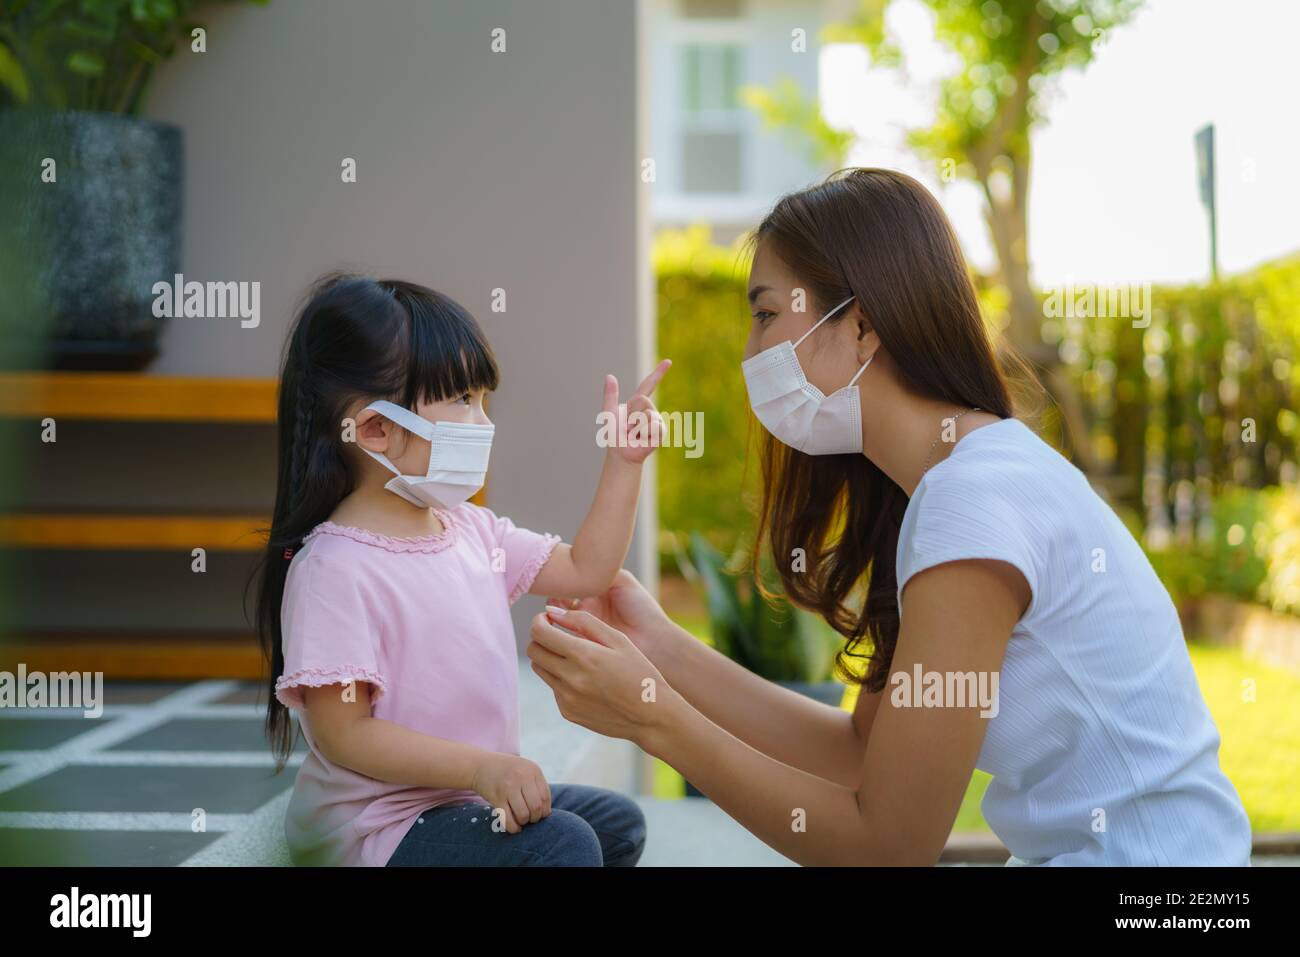 La mère asiatique aide sa fille à porter un masque de protection pour protéger la situation d'épidémie de coronavirus Covid-19 avant d'aller à l'école. Préparez-vous à l'école Banque D'Images